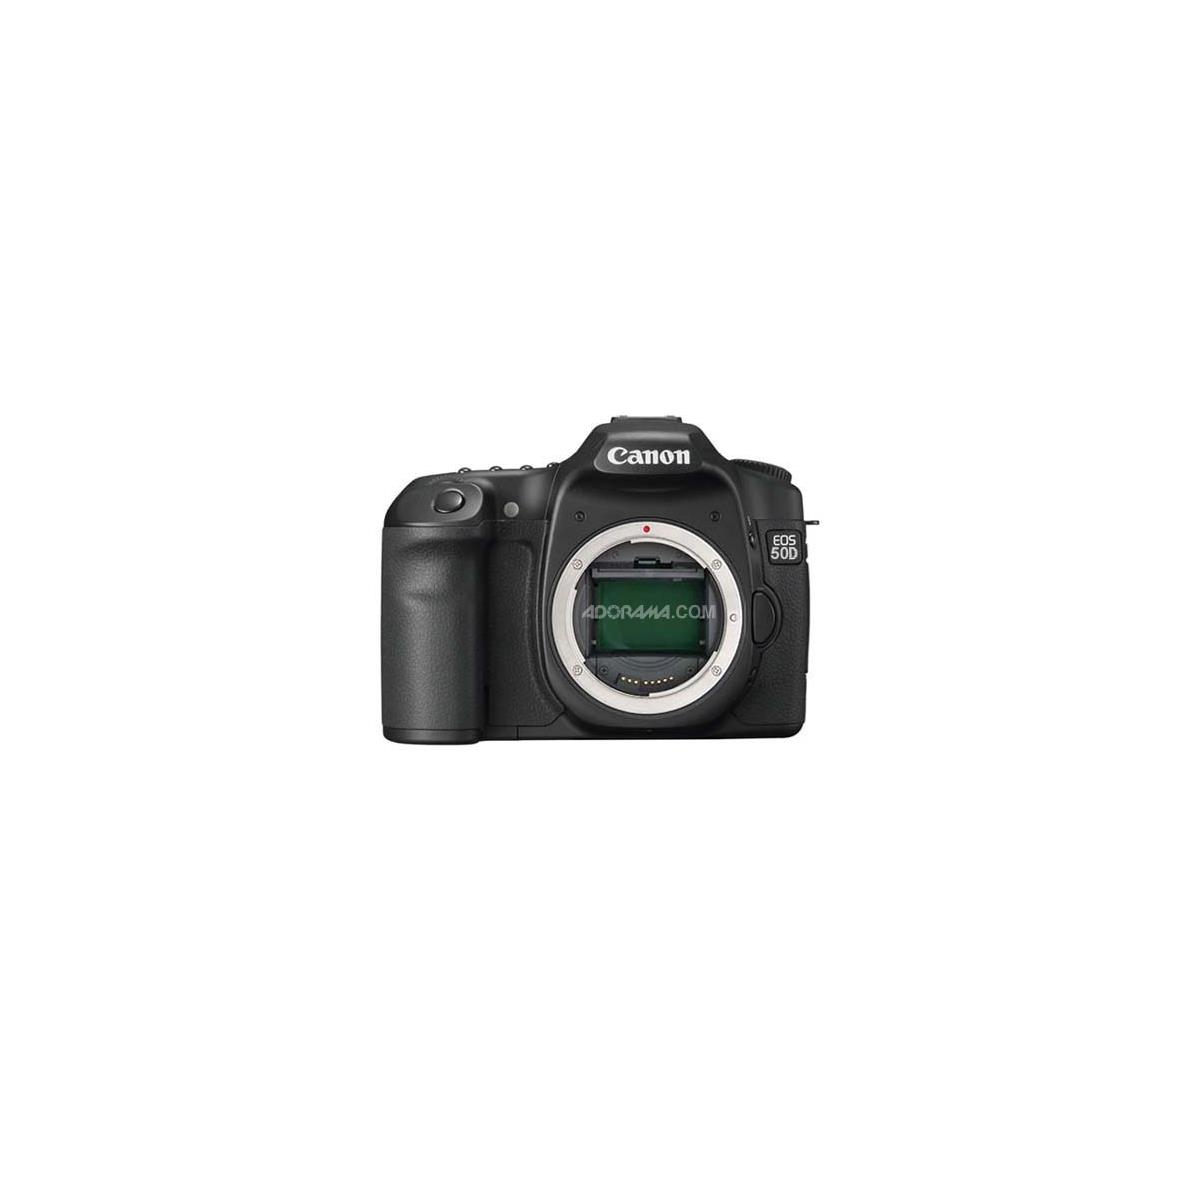 Canon EOS 50D DSLR Camera Body, 15.1MP, Black -  2807B006